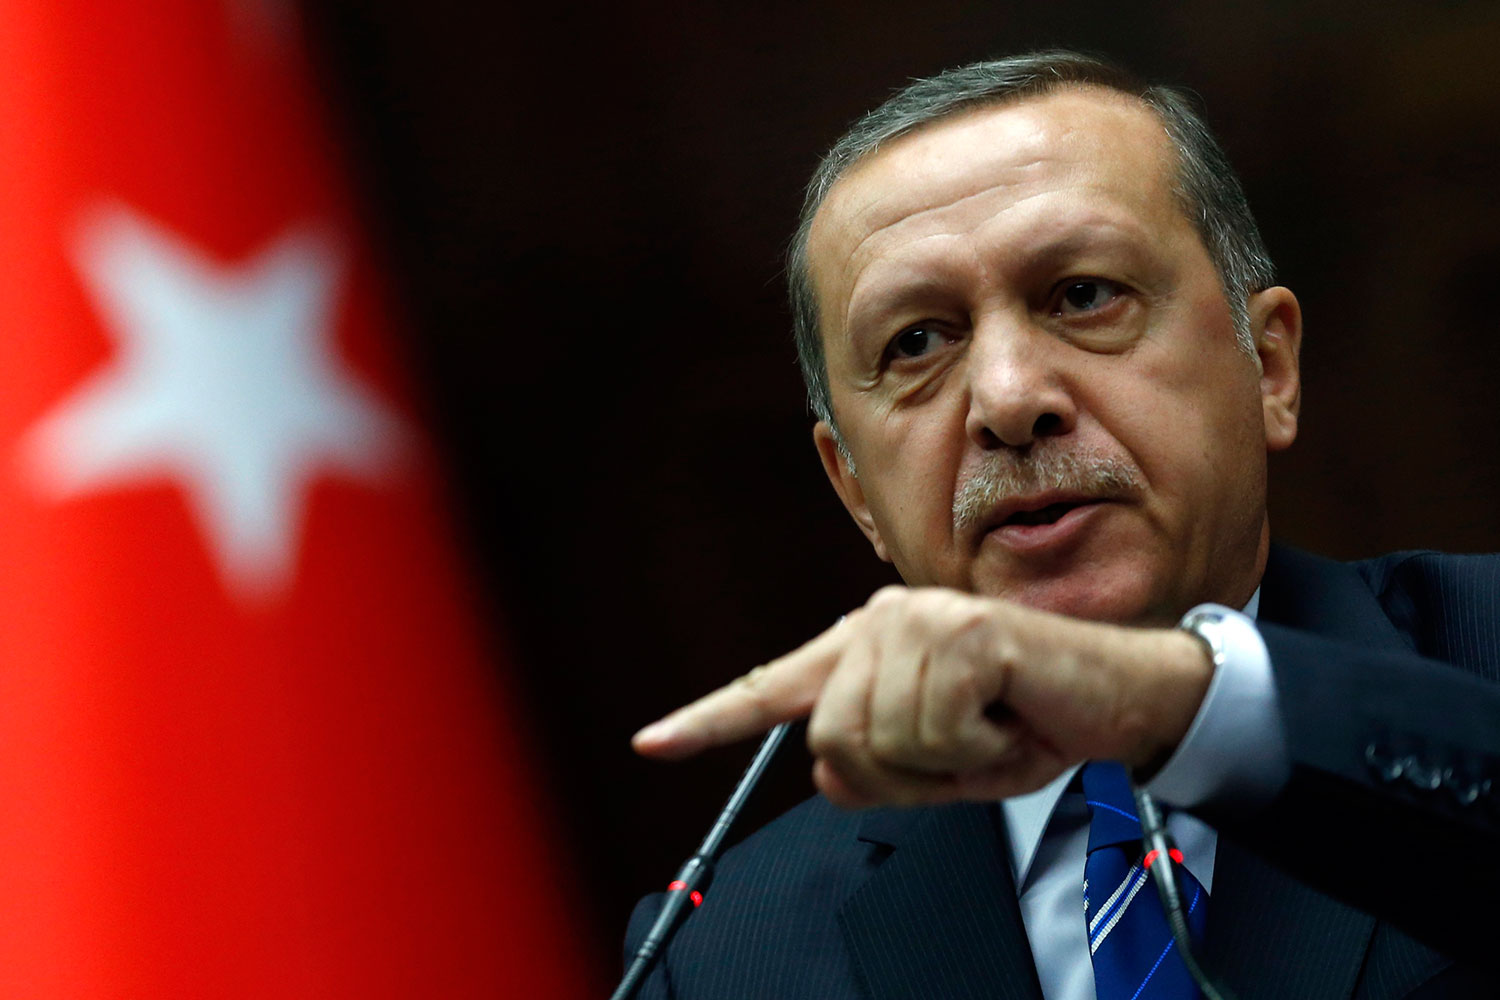 Condenado a diez meses de cárcel por insultar a Erdogan en Twitter